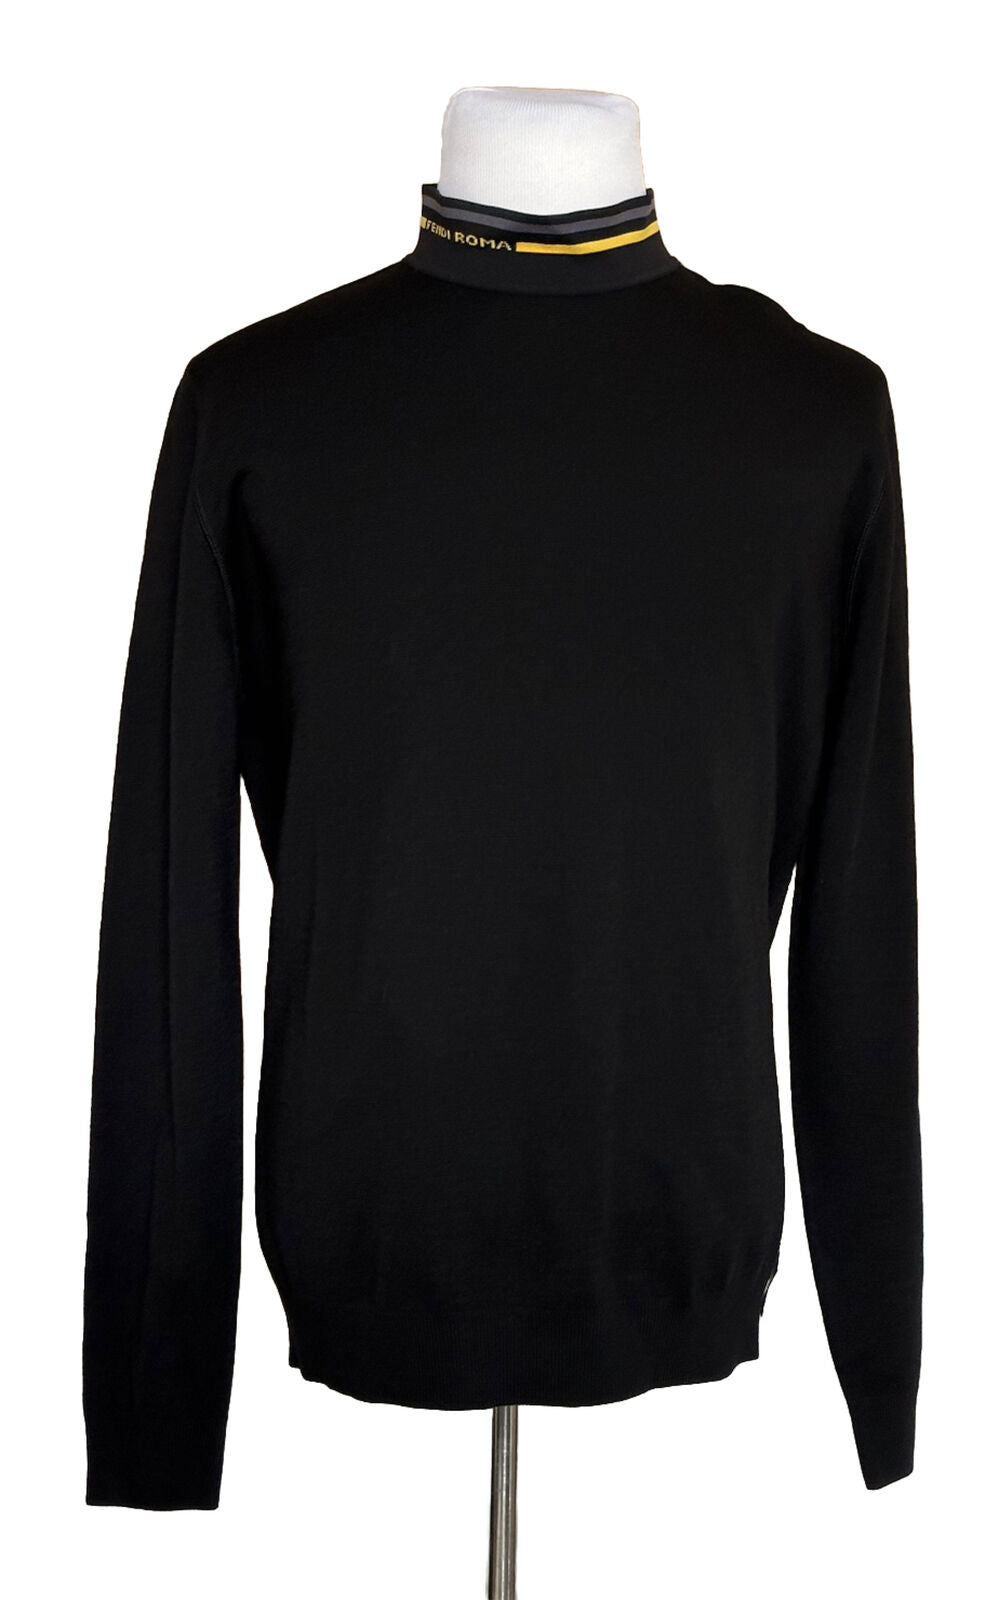 NWT $850 Шерстяной вязаный свитер Fendi Черный 54 евро FZY464 Сделано в Италии 